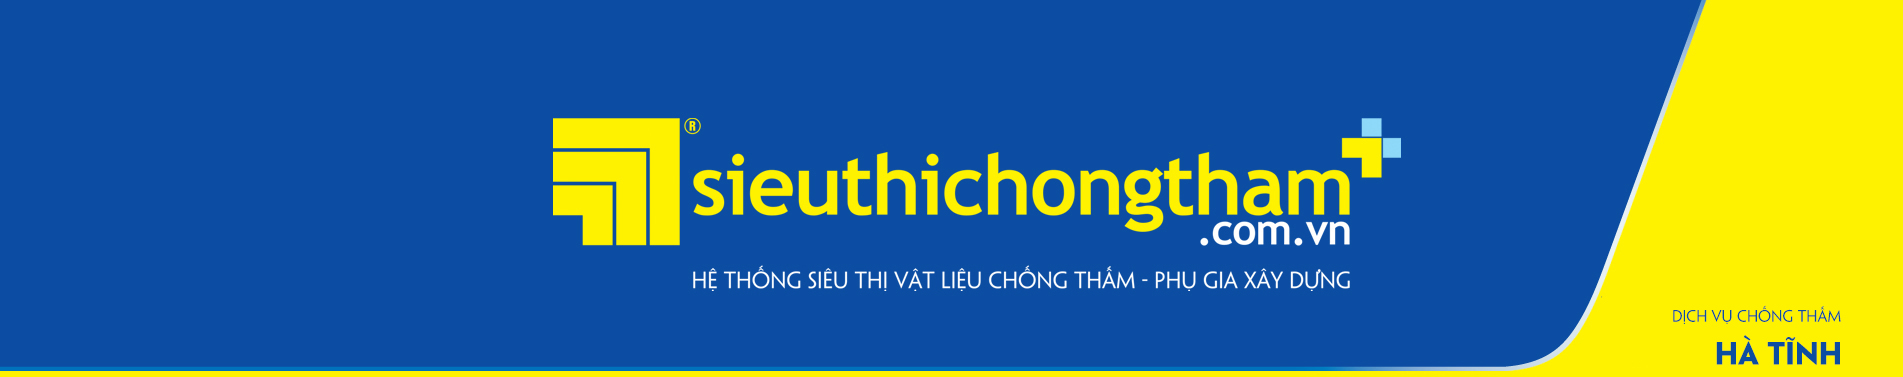 Dich Vu Chong Tham Ha Tinh